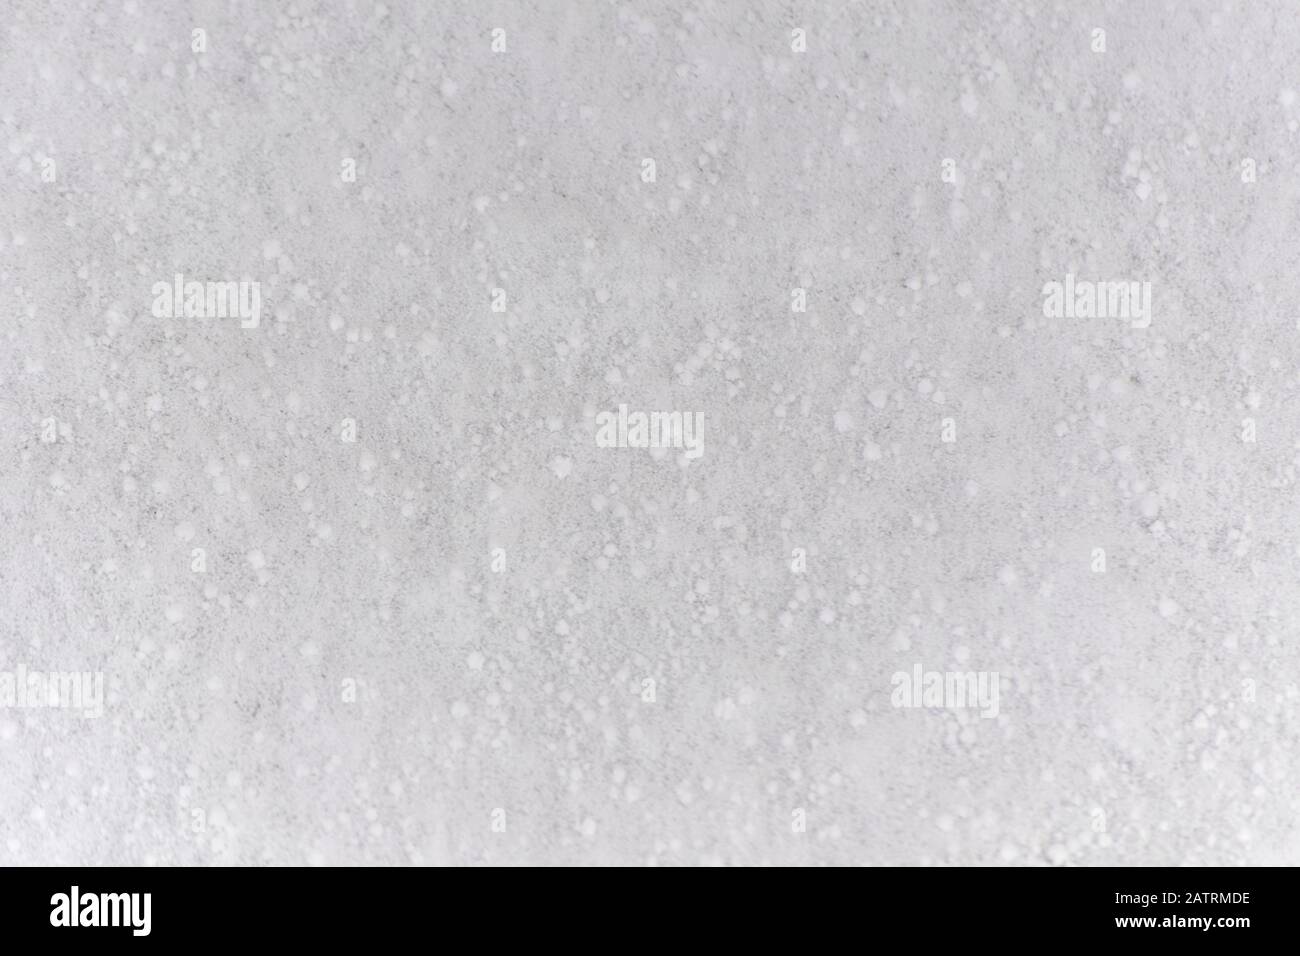 Hintergrund von Neuschnee Weiß natürliches Texturmuster für minimalistisches Design in Grautönen. Draufsicht mit Schneeflocken und großen Getreidearten. Konzept von ab Stockfoto